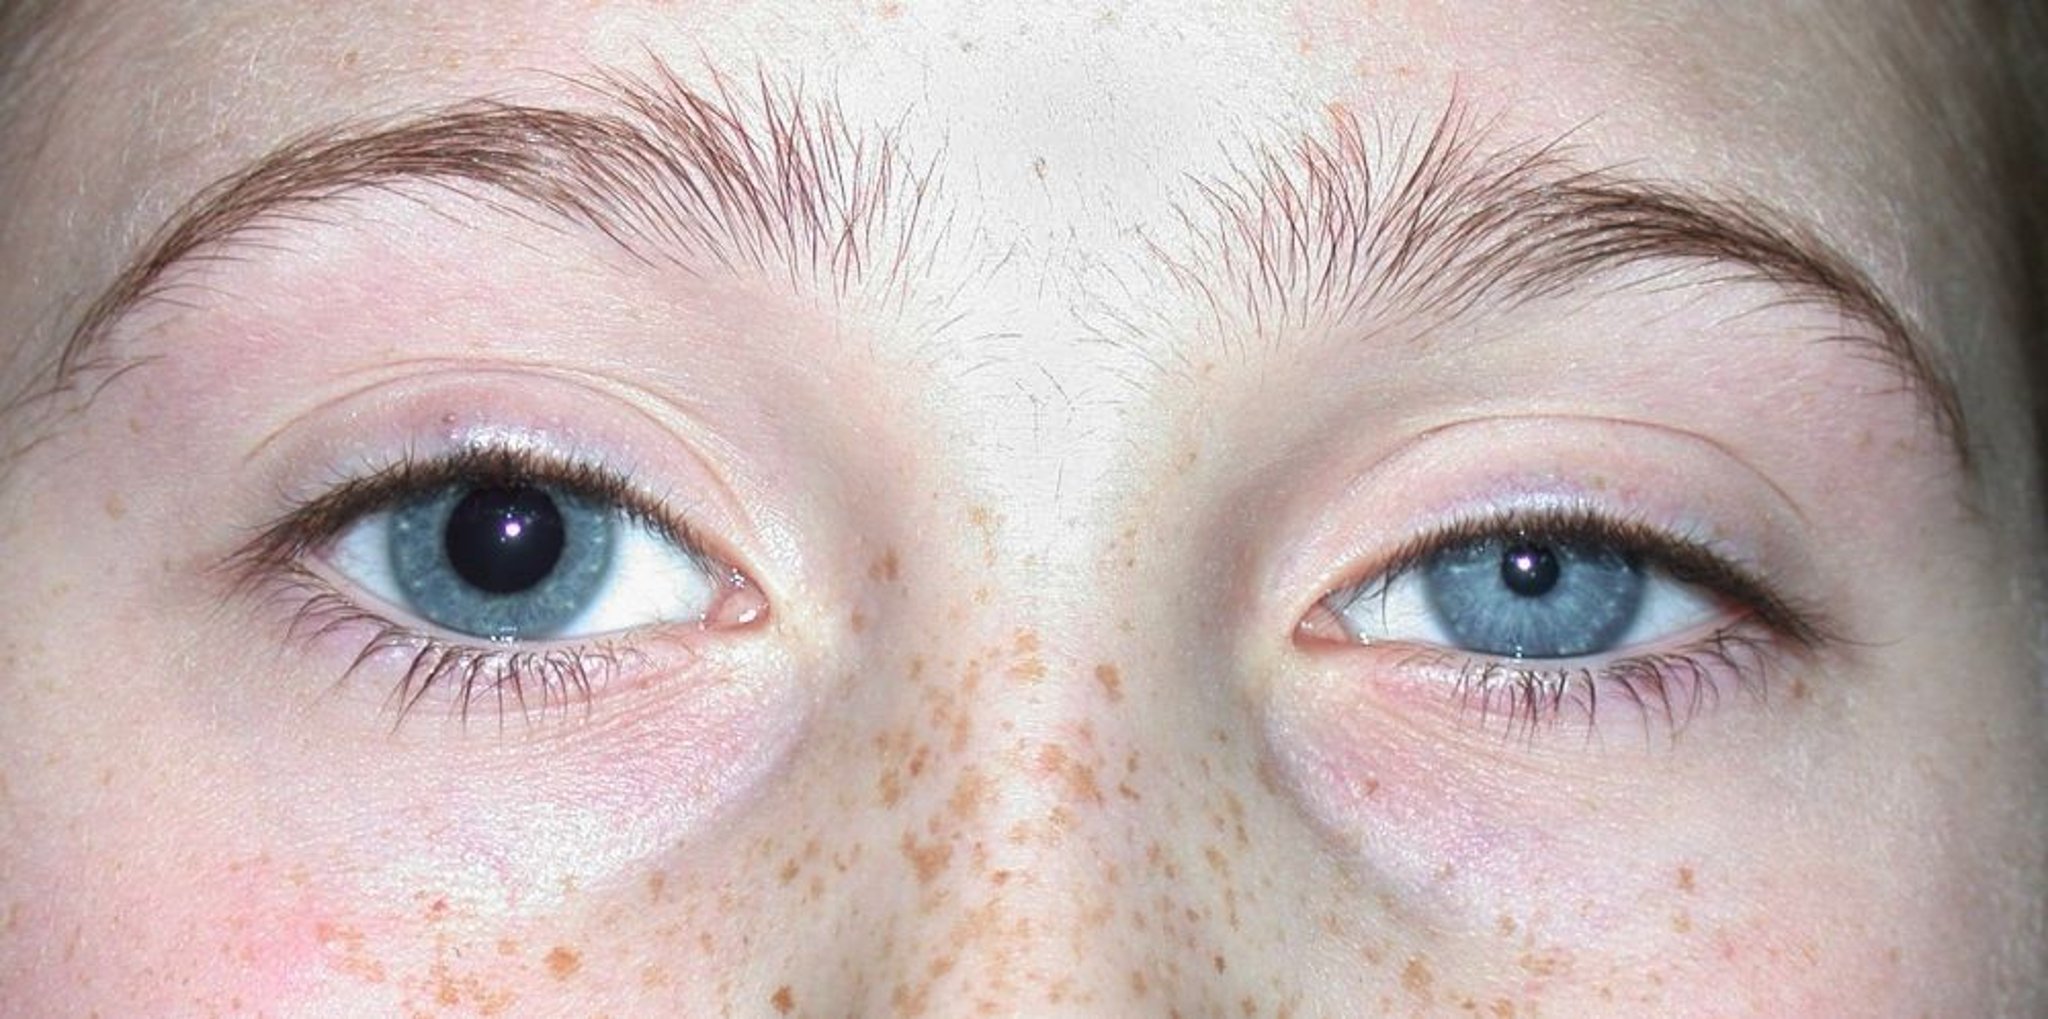 Pupilas desiguales (anisocoria)